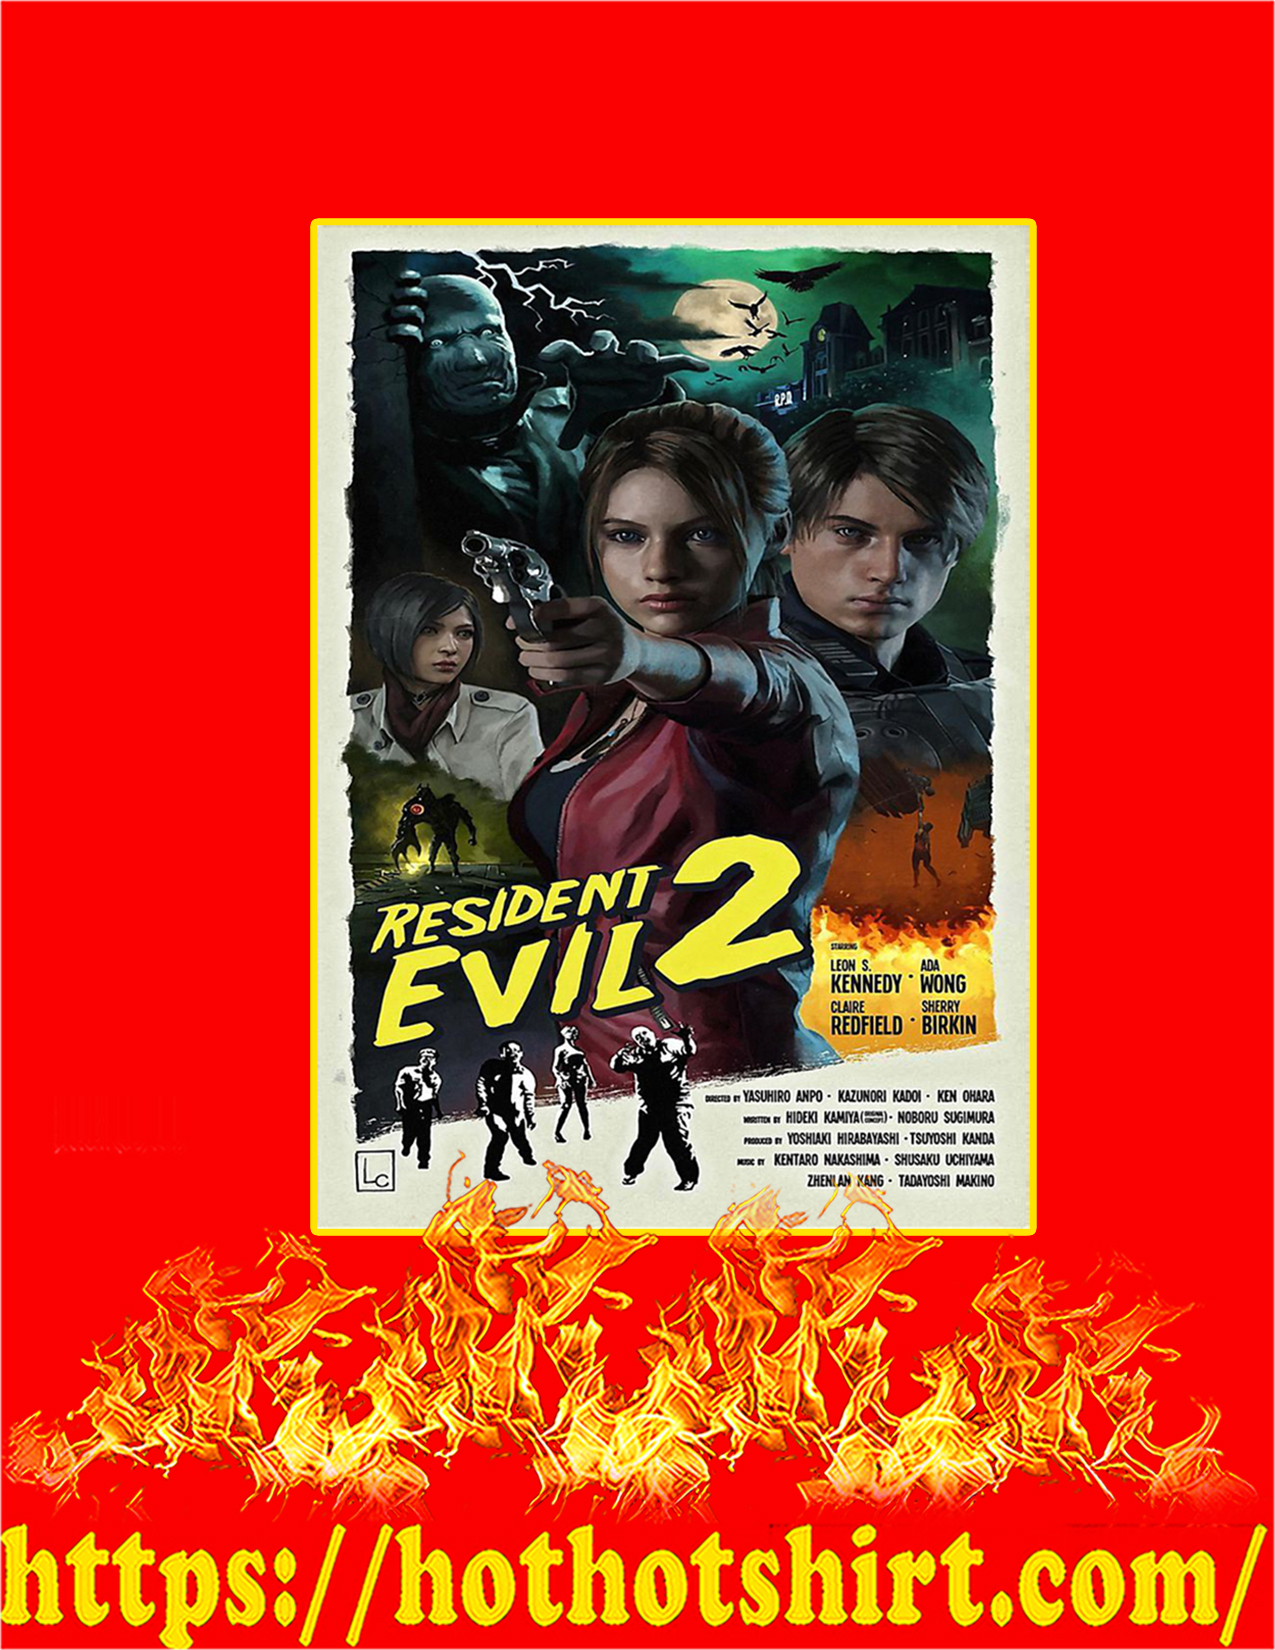 Resident evil 2 poster